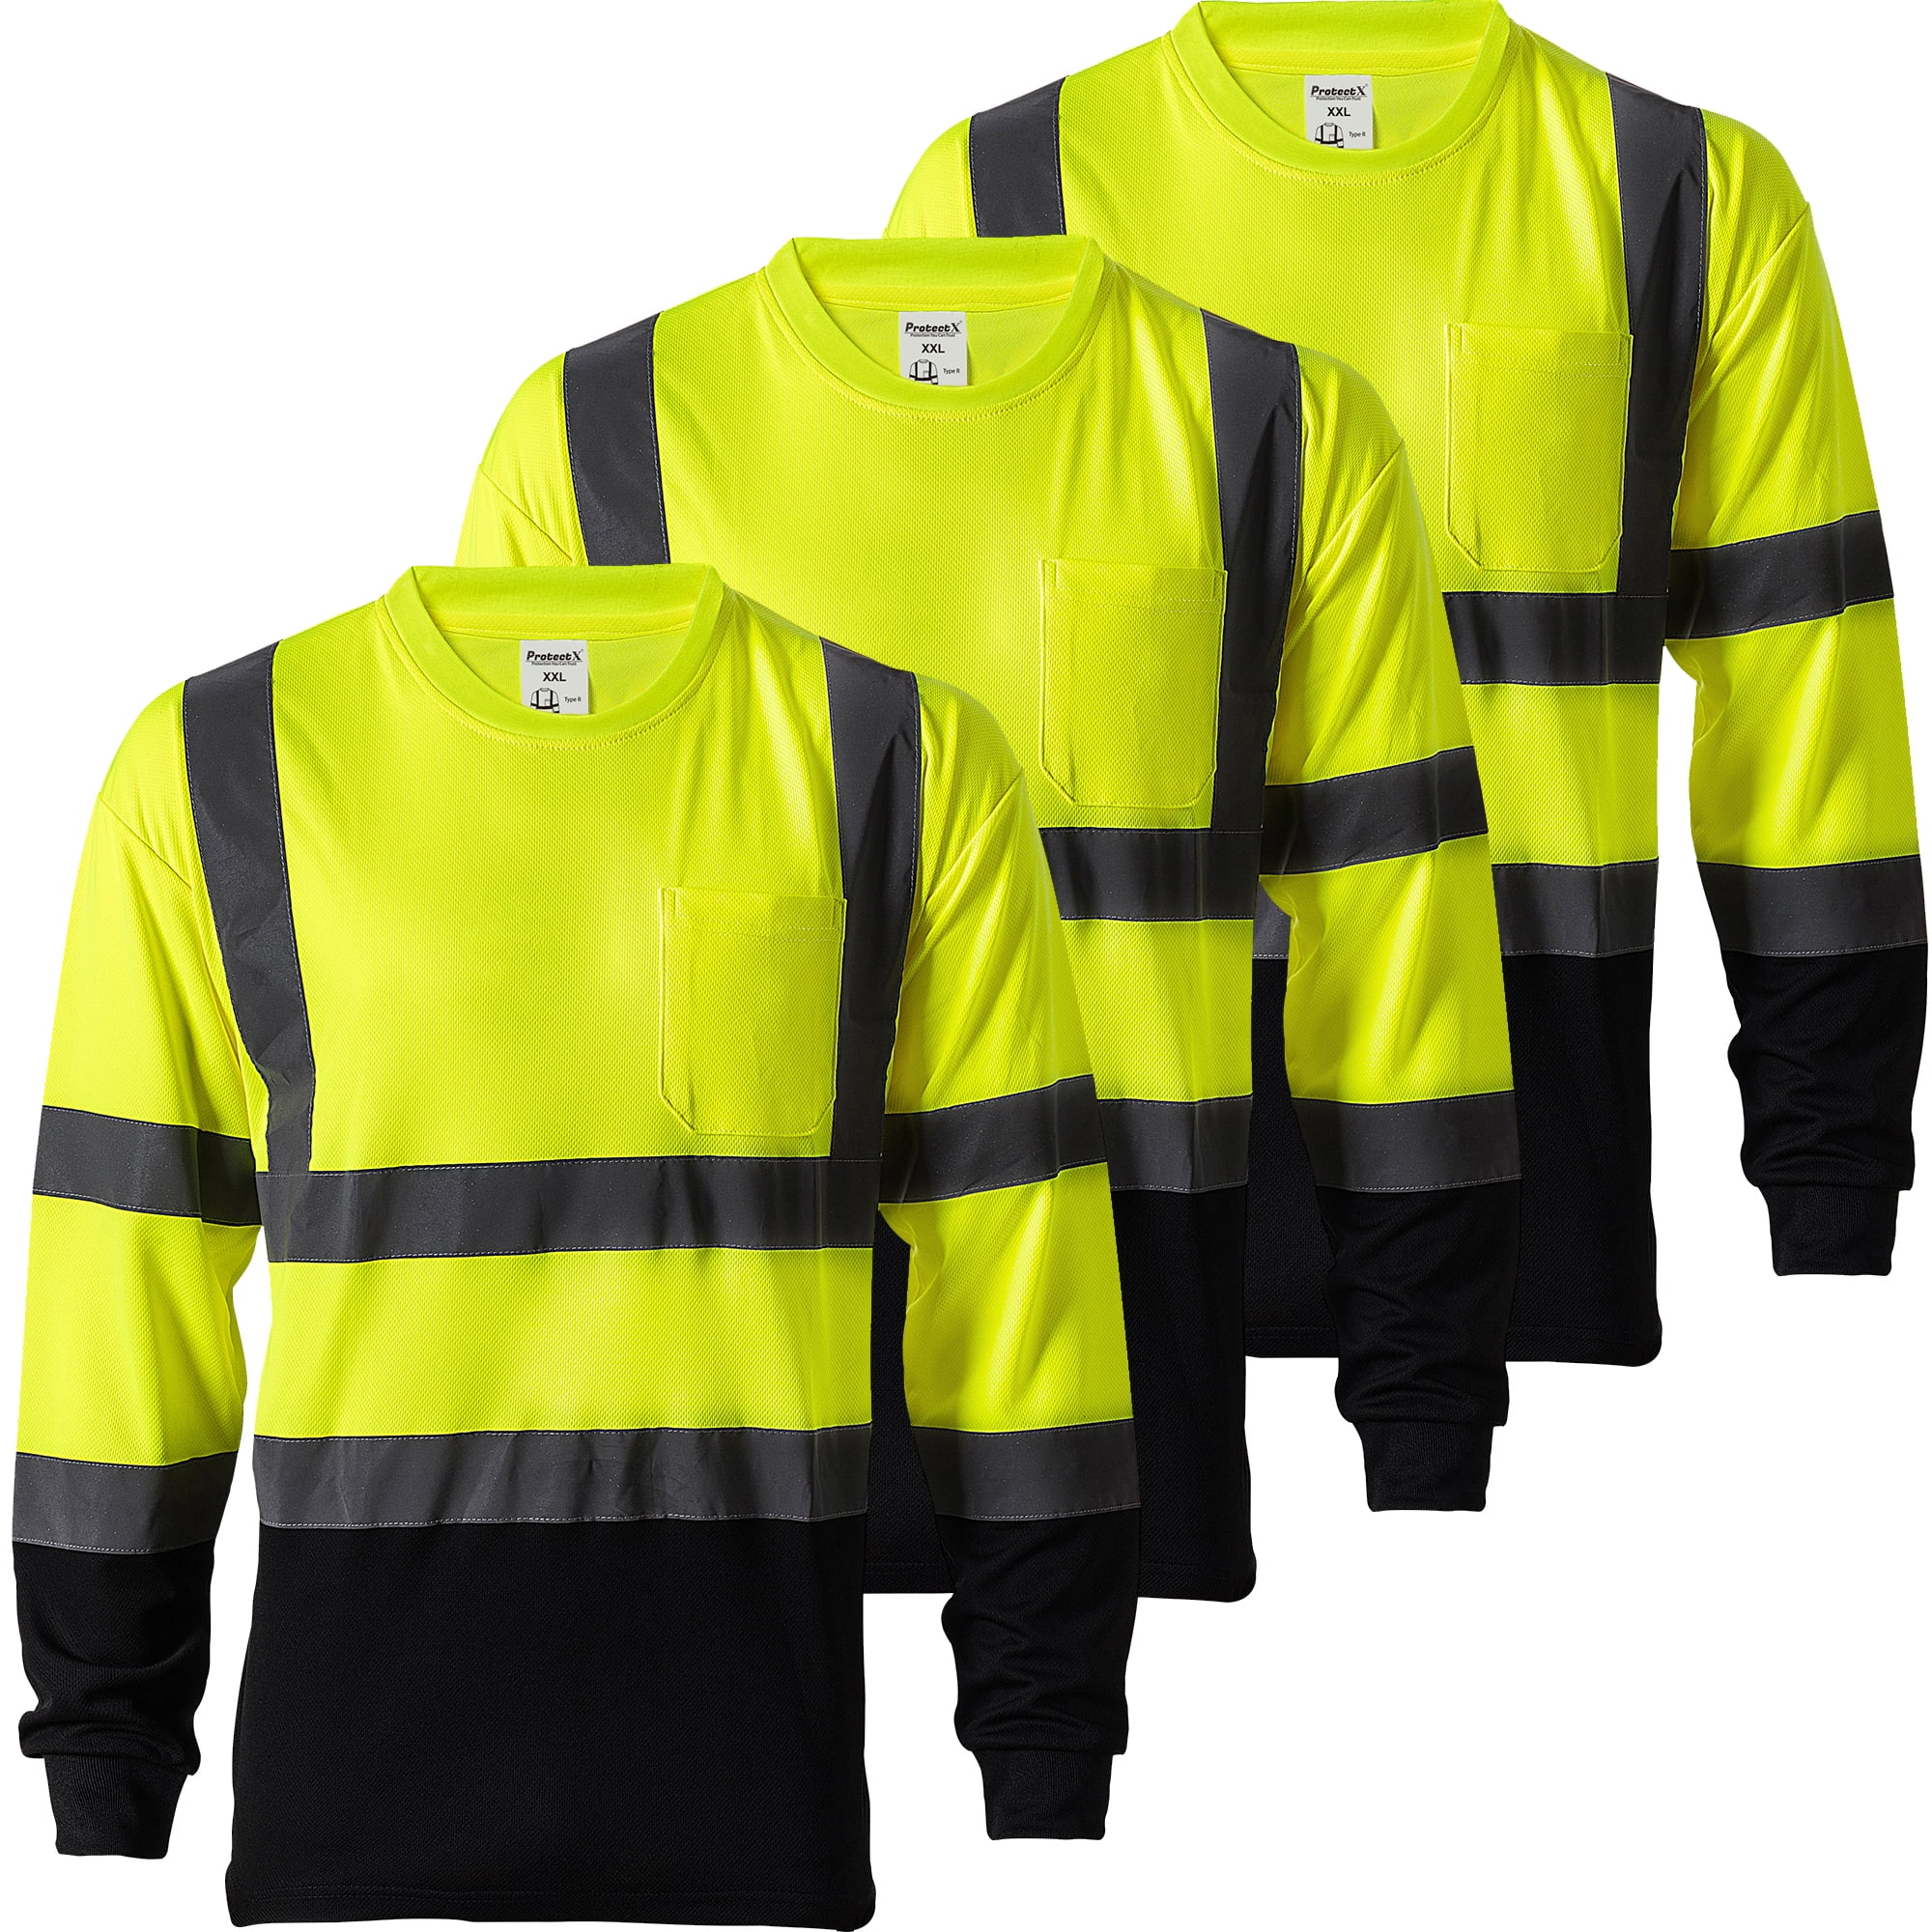 Radyan 10 Pack Long Sleeve (Ropa De Trabajo) Safety Green